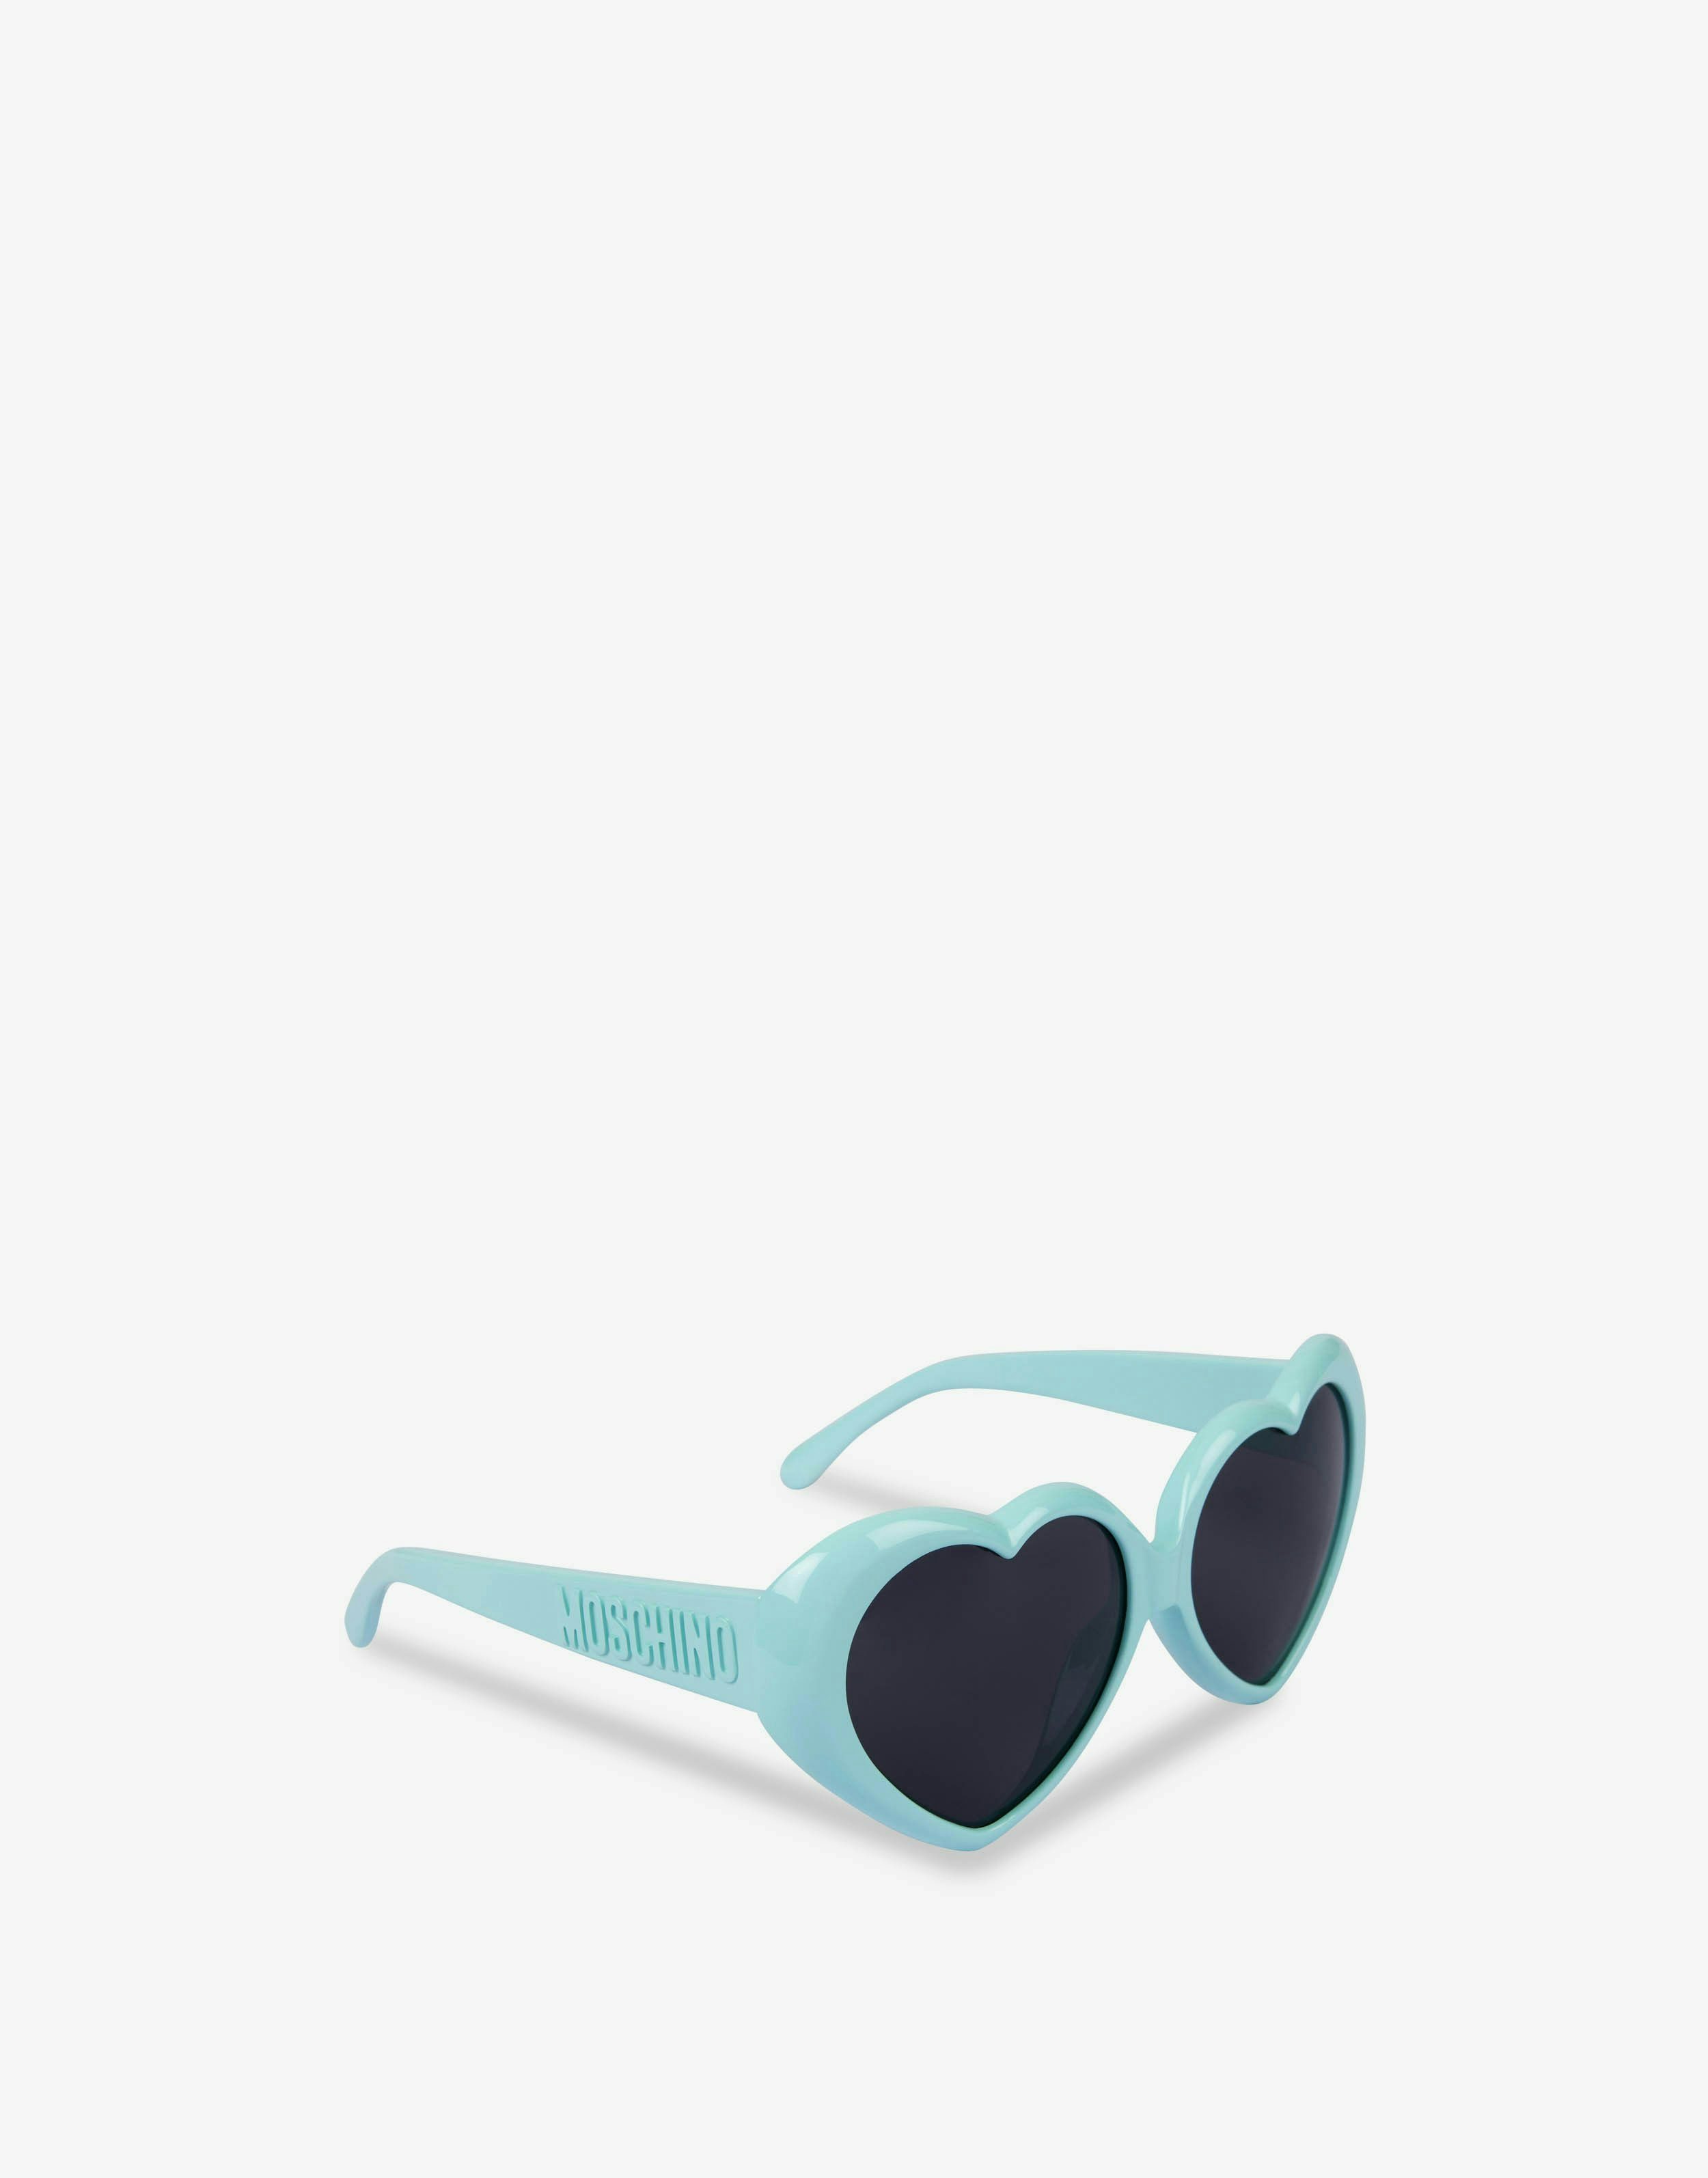 52 Moschino Moschino Women's Eye Sunglasses Bianco/rosso White 